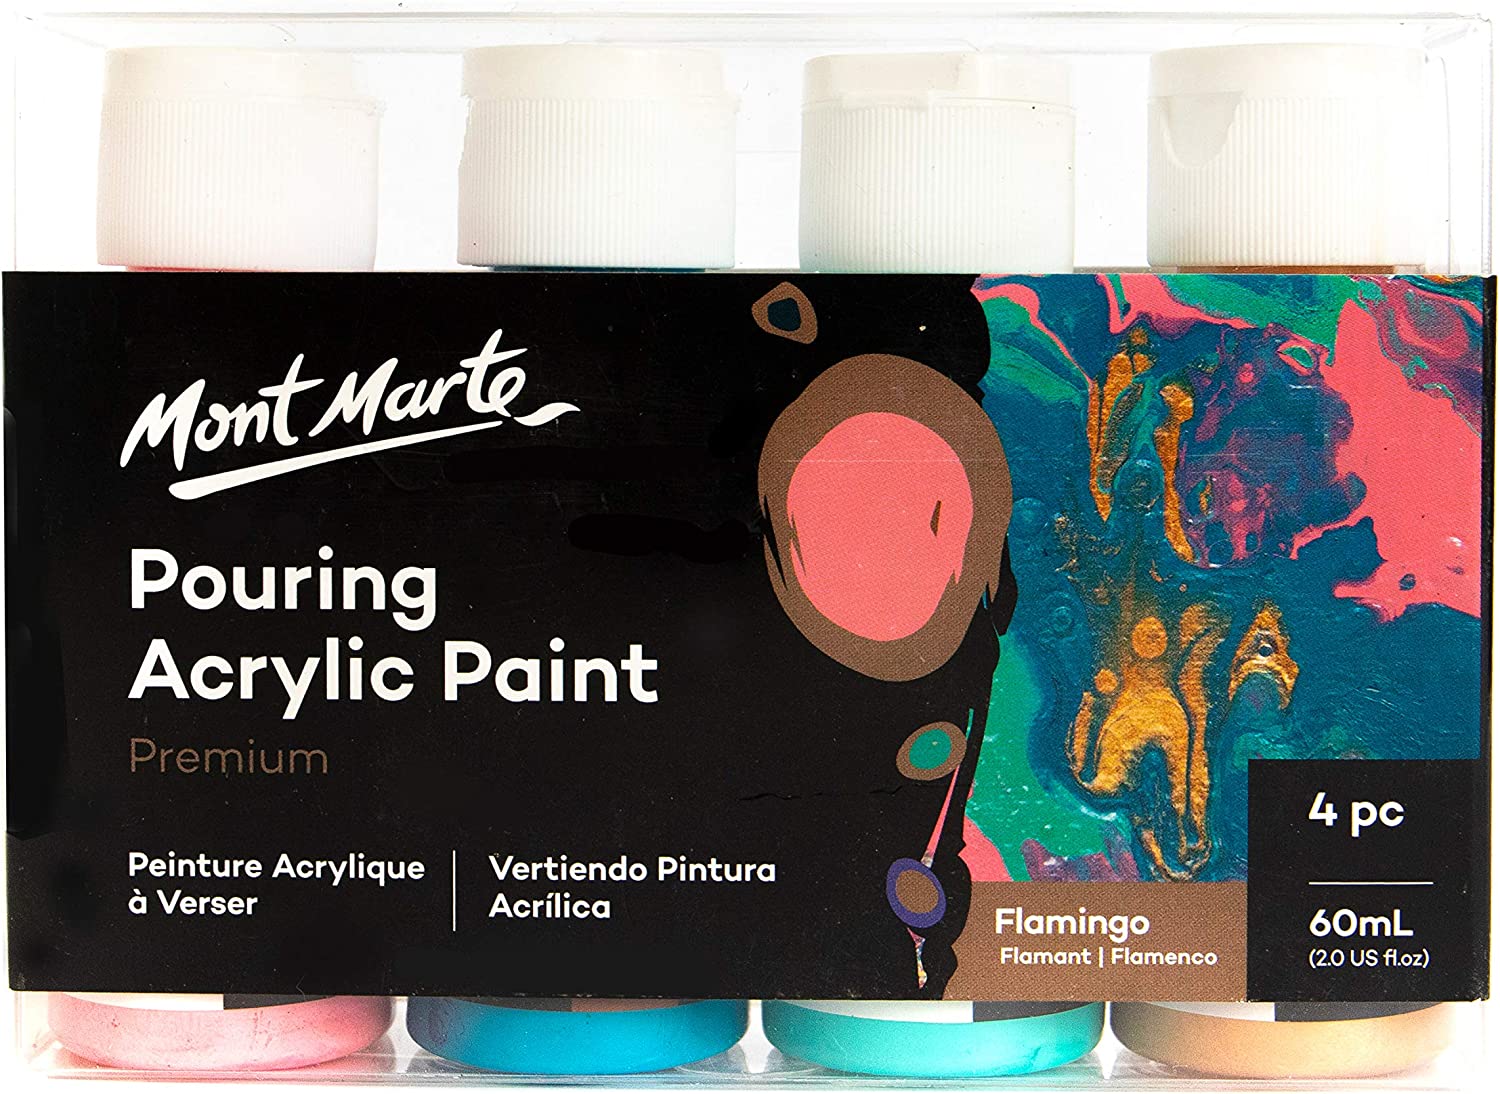 Mont Marte Pouring Acrylic Paint Set Premium 4pc x 60ml Flamingo